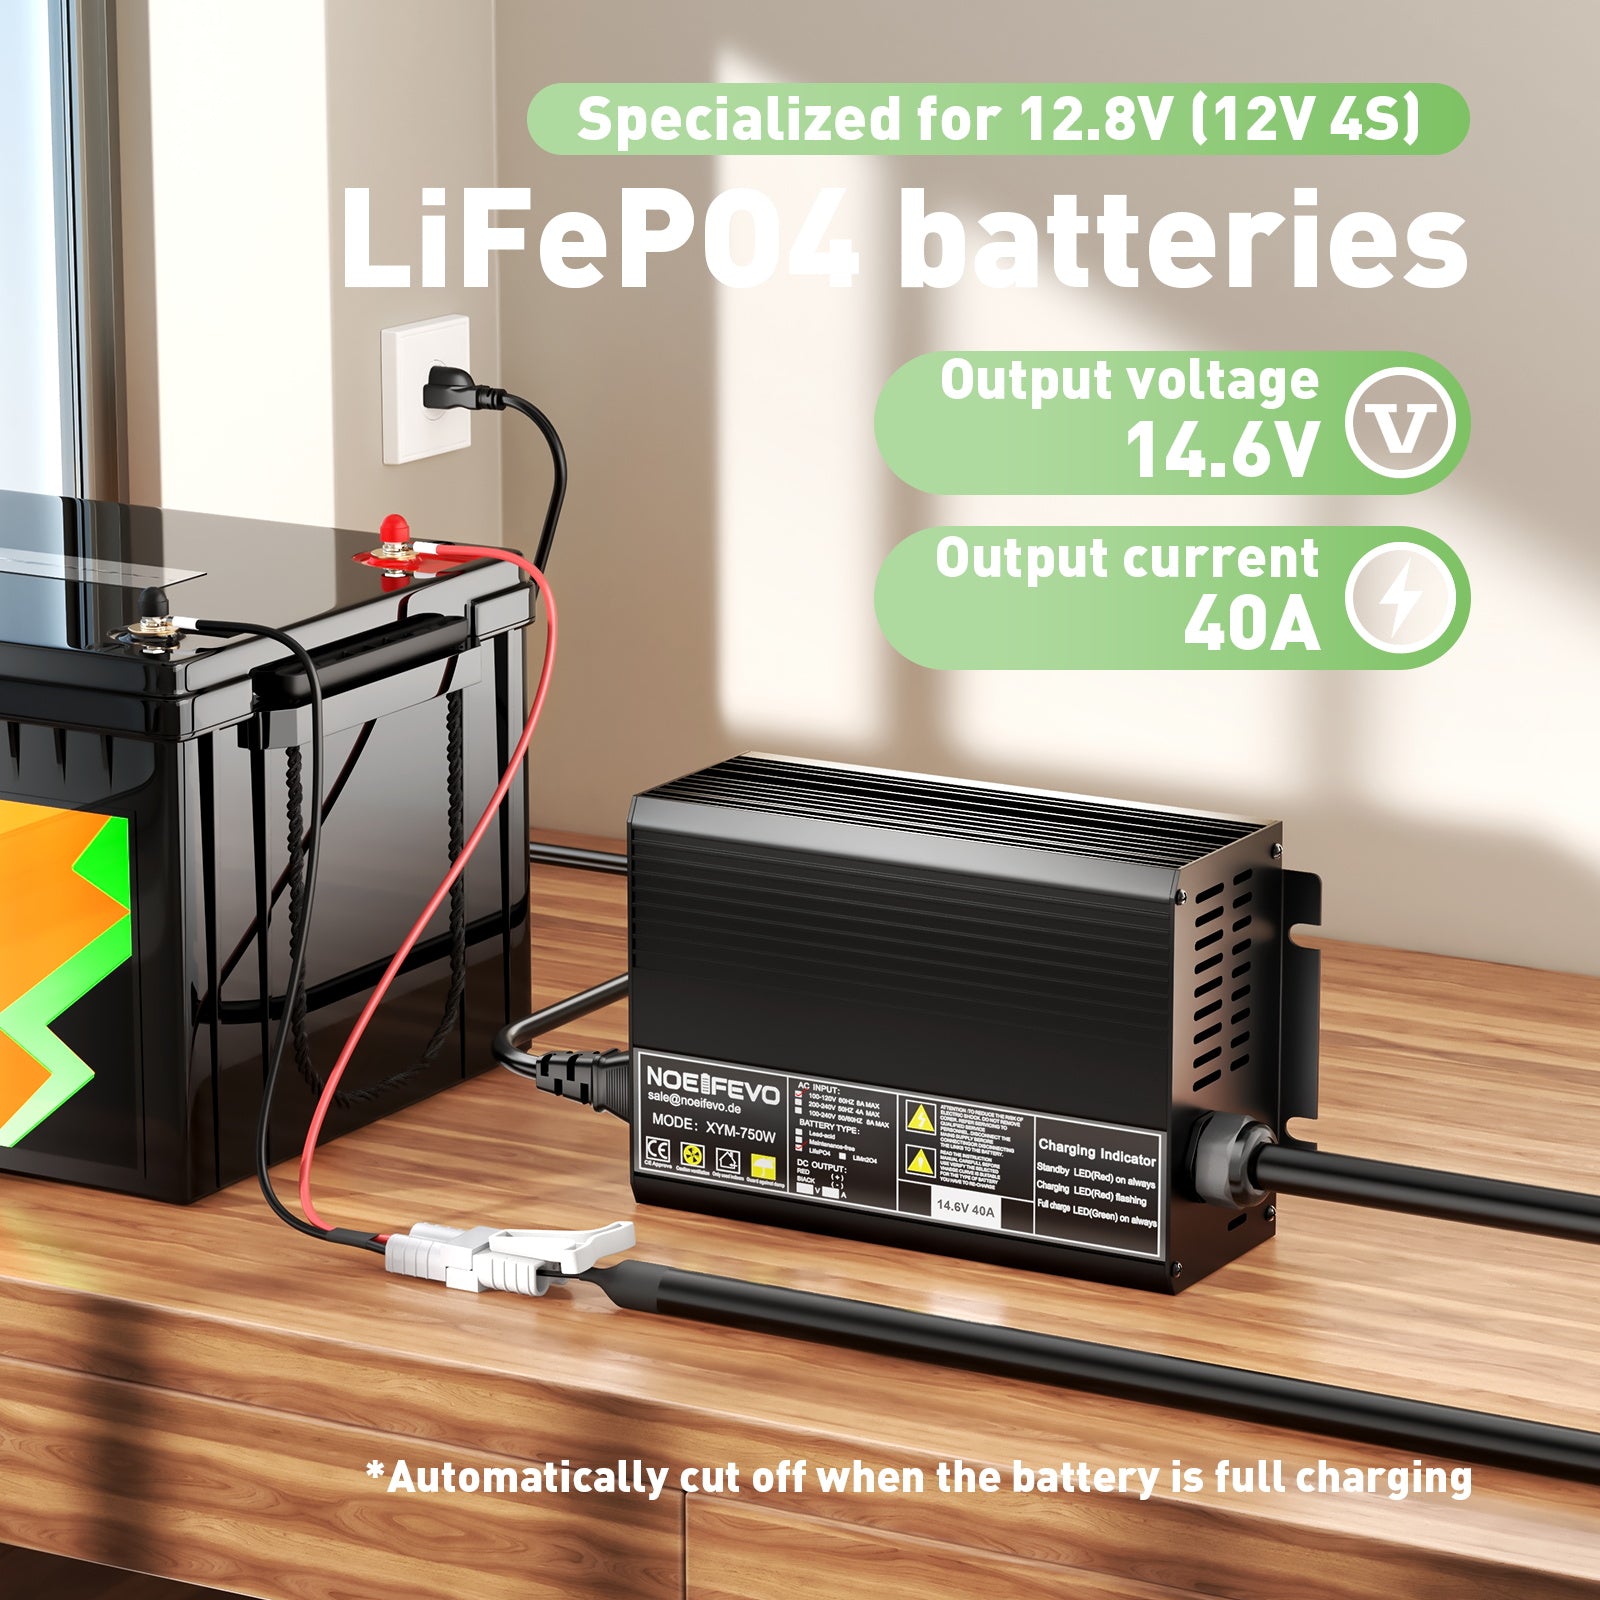 Noeifevo 14.6V 40A LiFePO4 battery charger for 12V 12.8V LFP battery